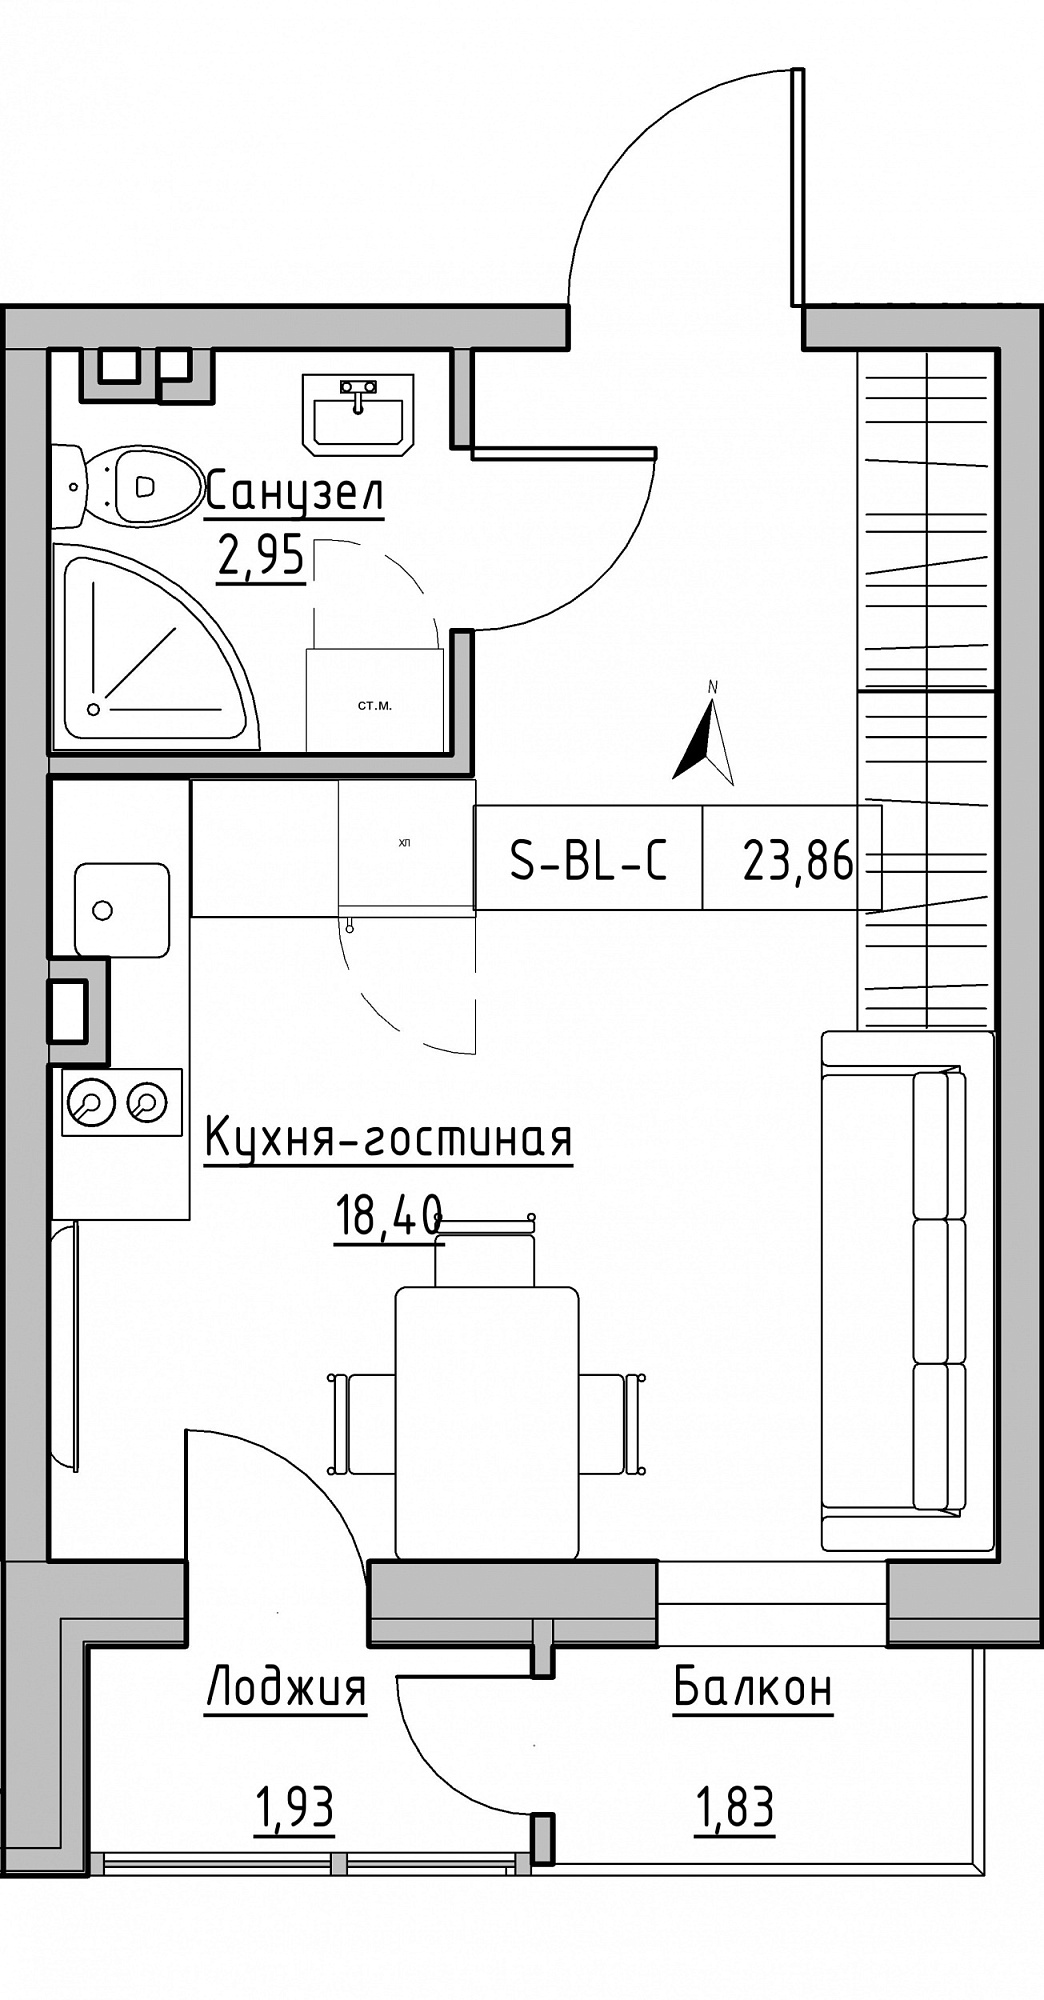 Планування Smart-квартира площею 23.86м2, KS-024-03/0005.